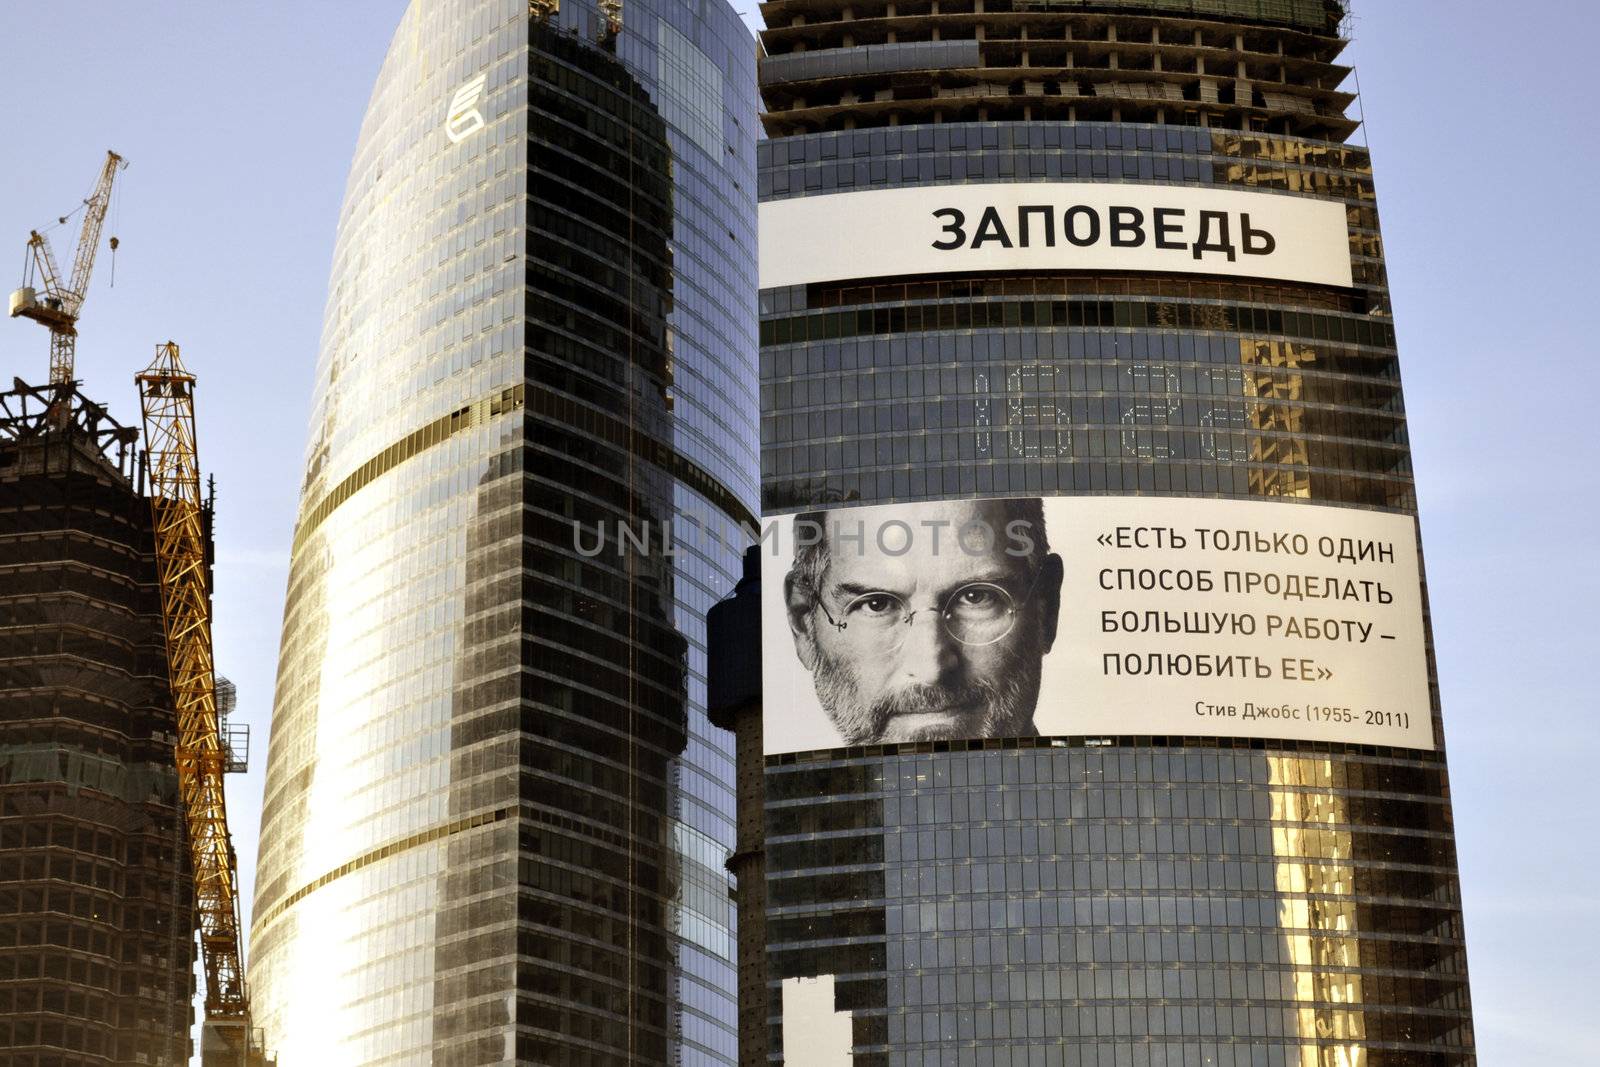 Steve Jobs's portrait in Moscow by yuriz